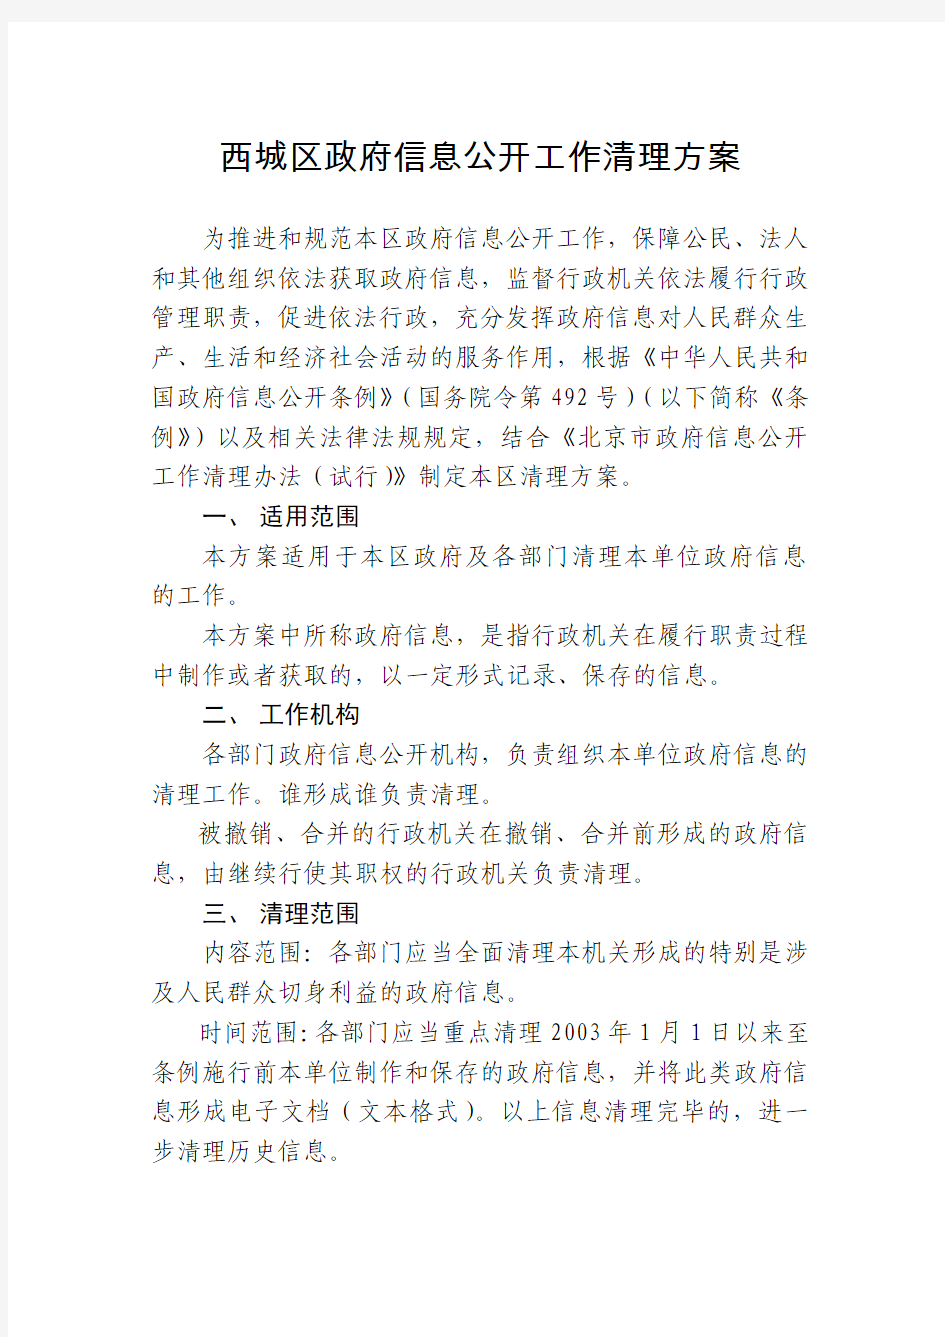 北京市西城区人民政府办公室关于印发西城区政府信息公开工作文件的通知